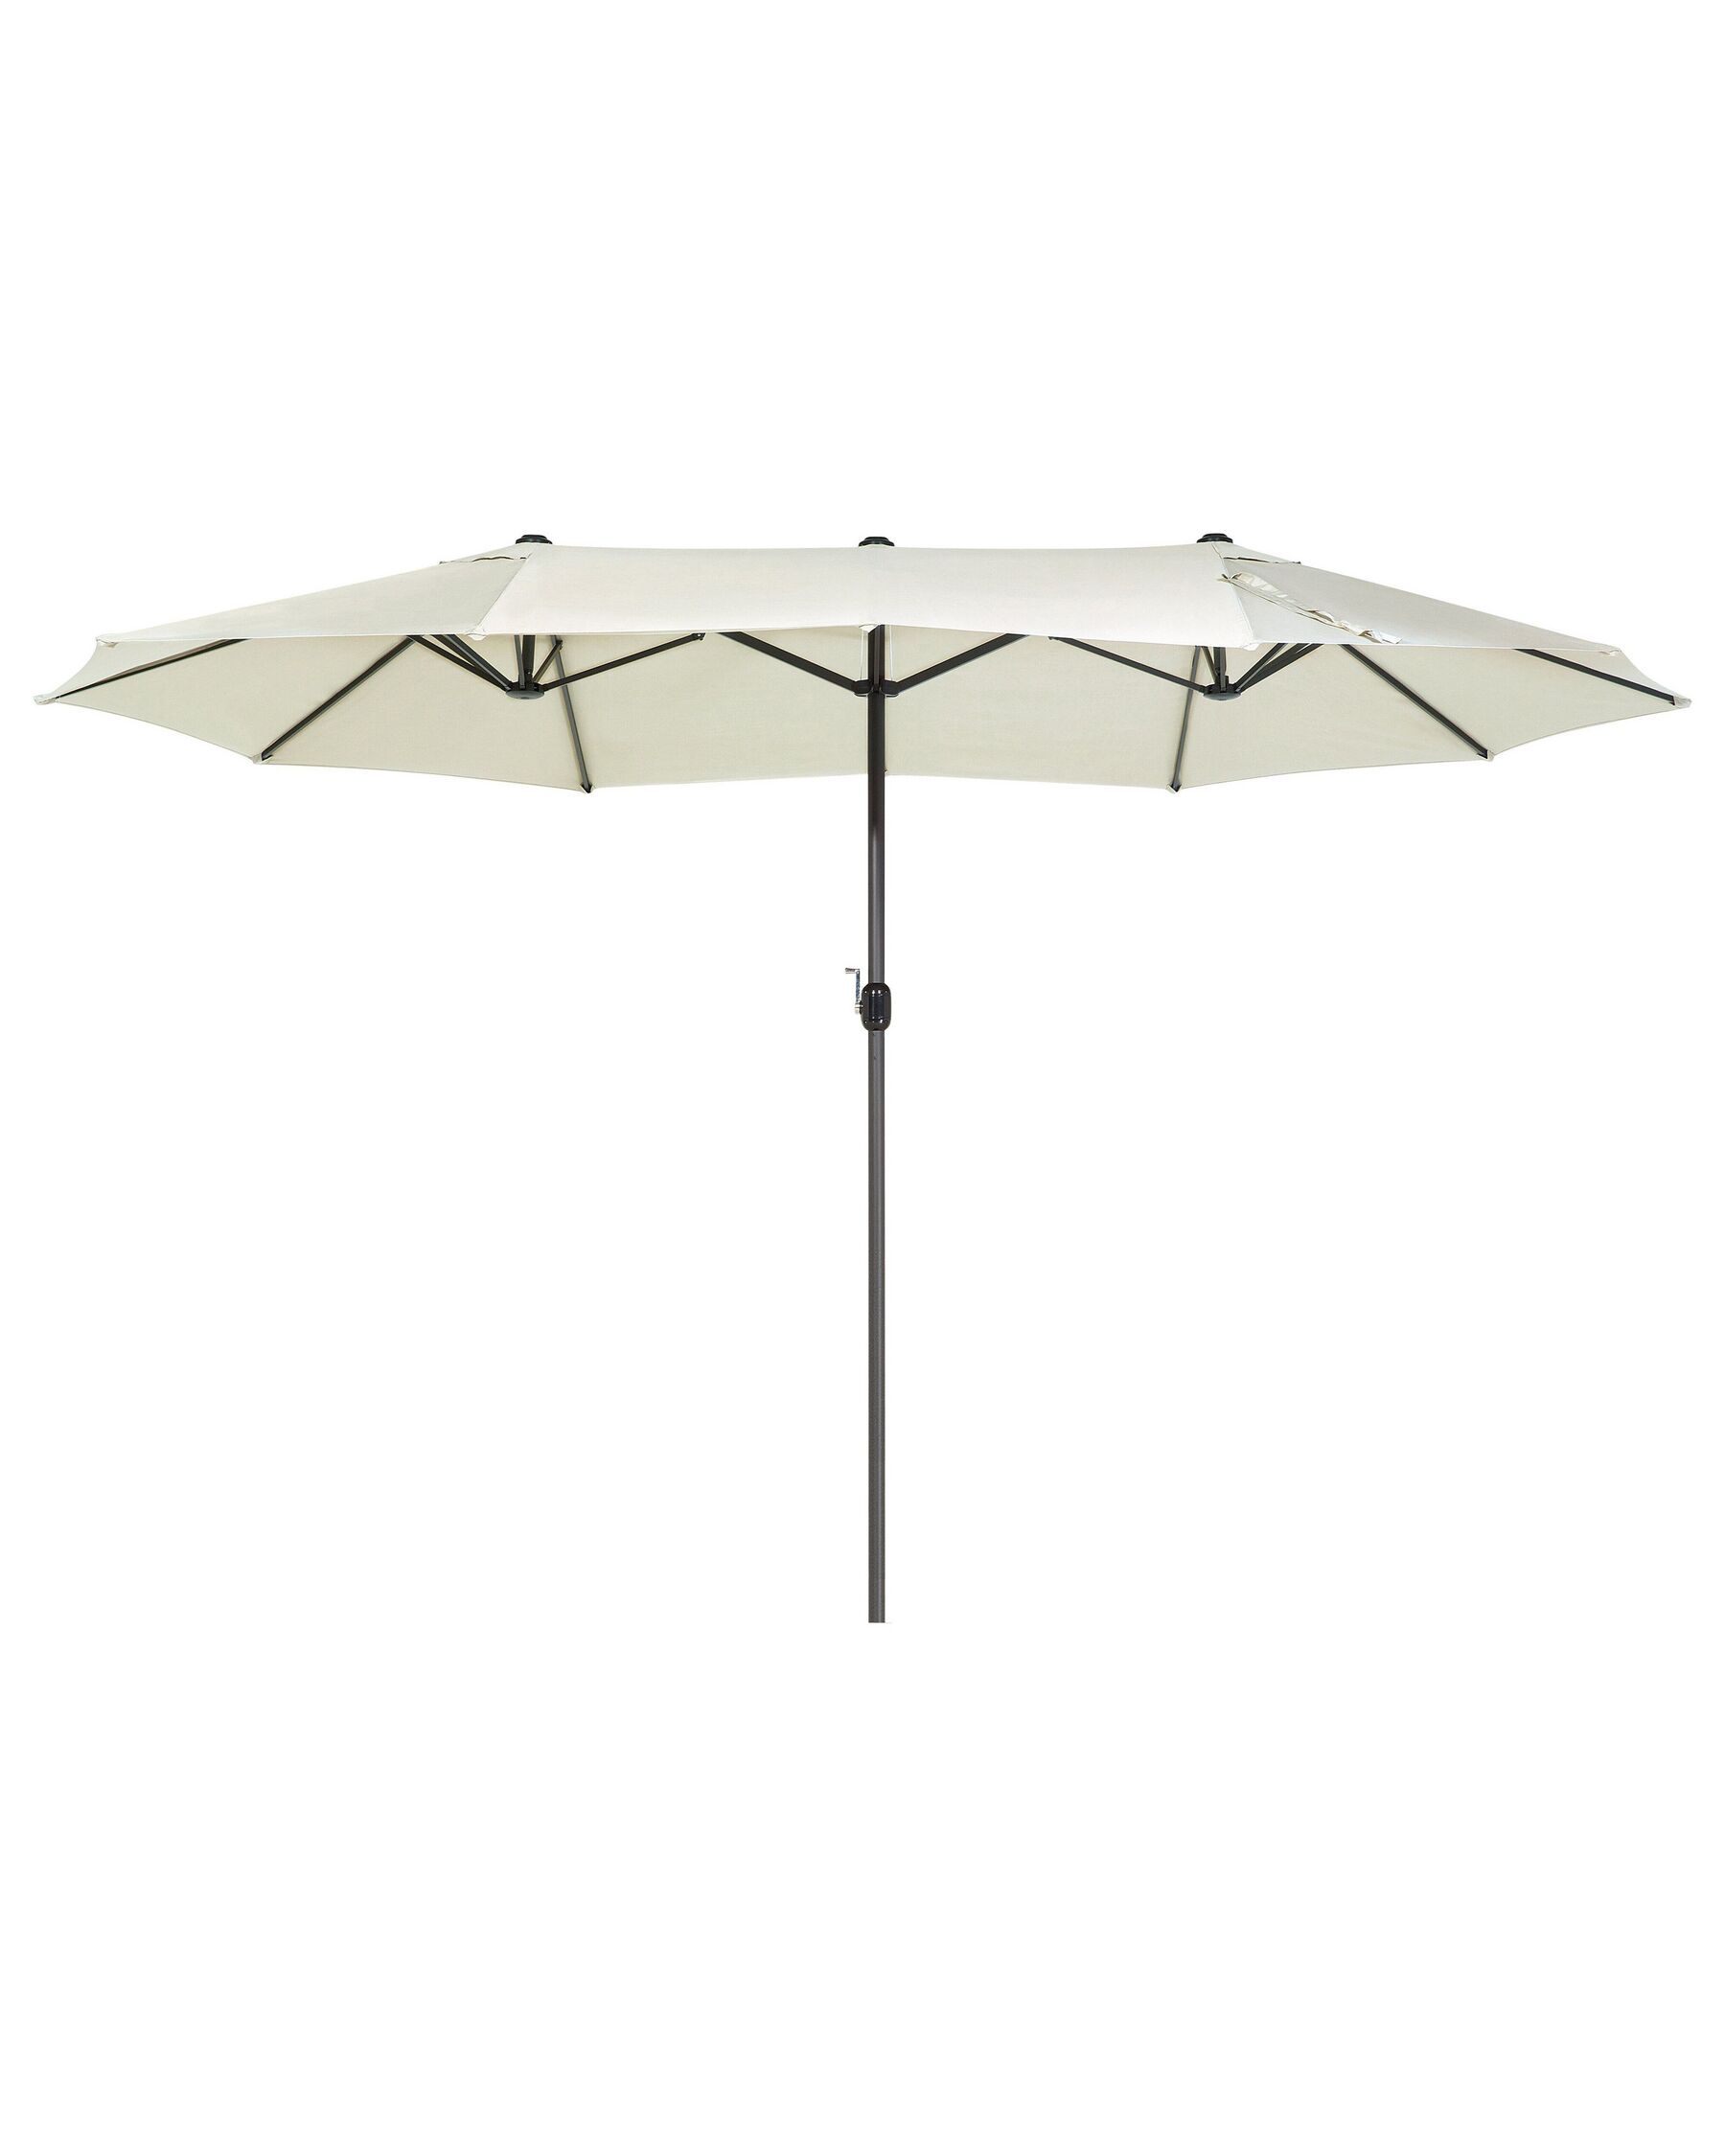 Grand parasol XL avec toile beige clair 270 x 460 cm SIBILLA_680019